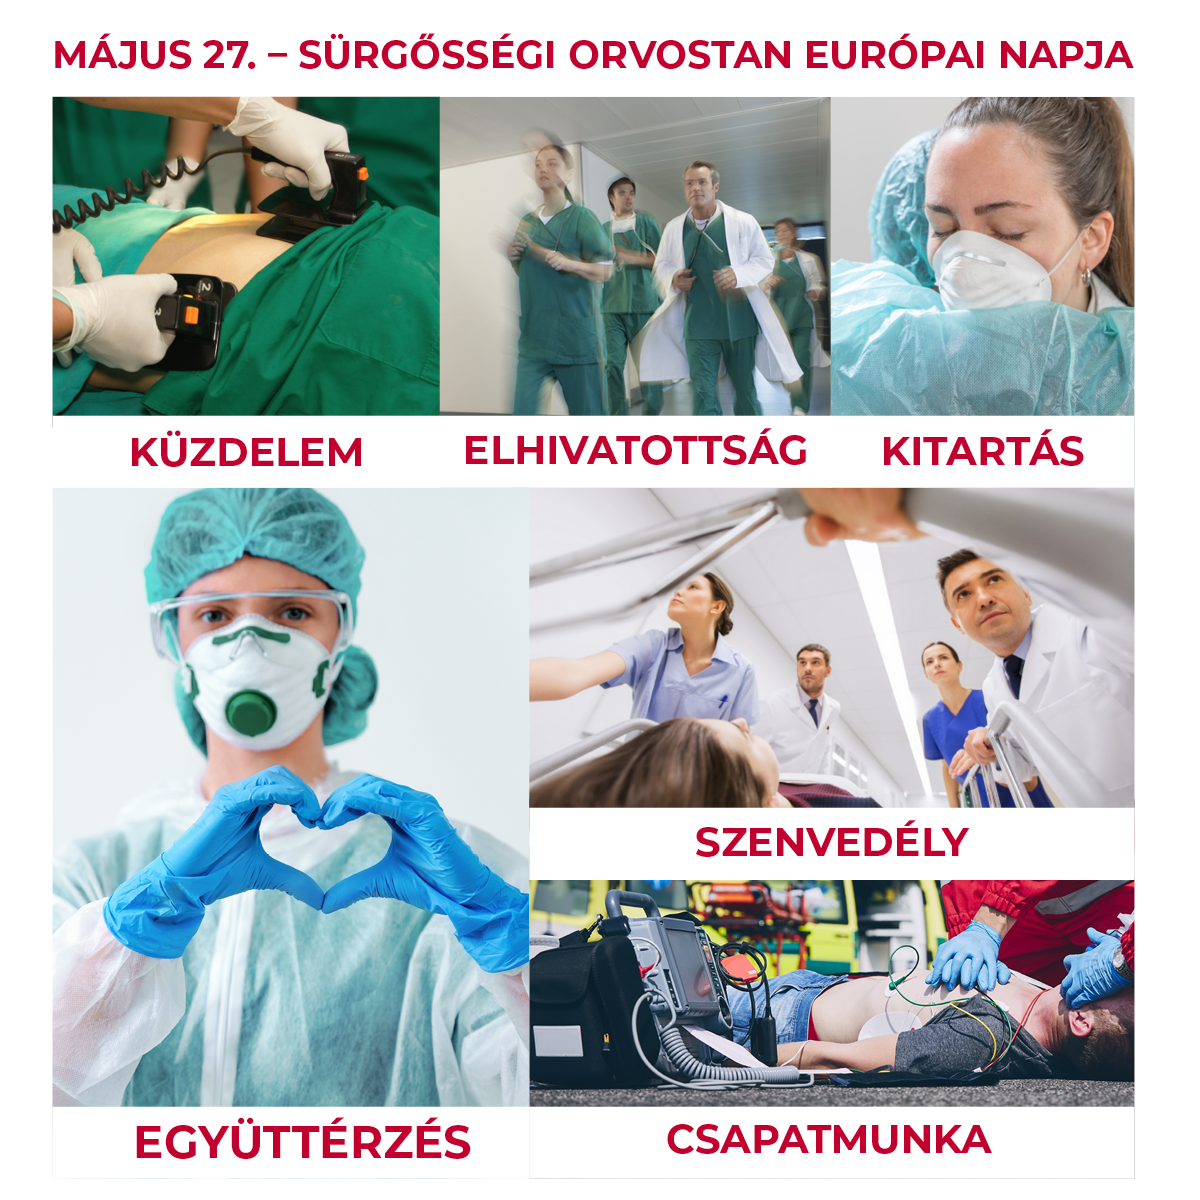 Május 27.  A Sürgősségi Orvostan Európai Napja, Szent György Kórház, Dr. Csermavölgyi István főigazgató